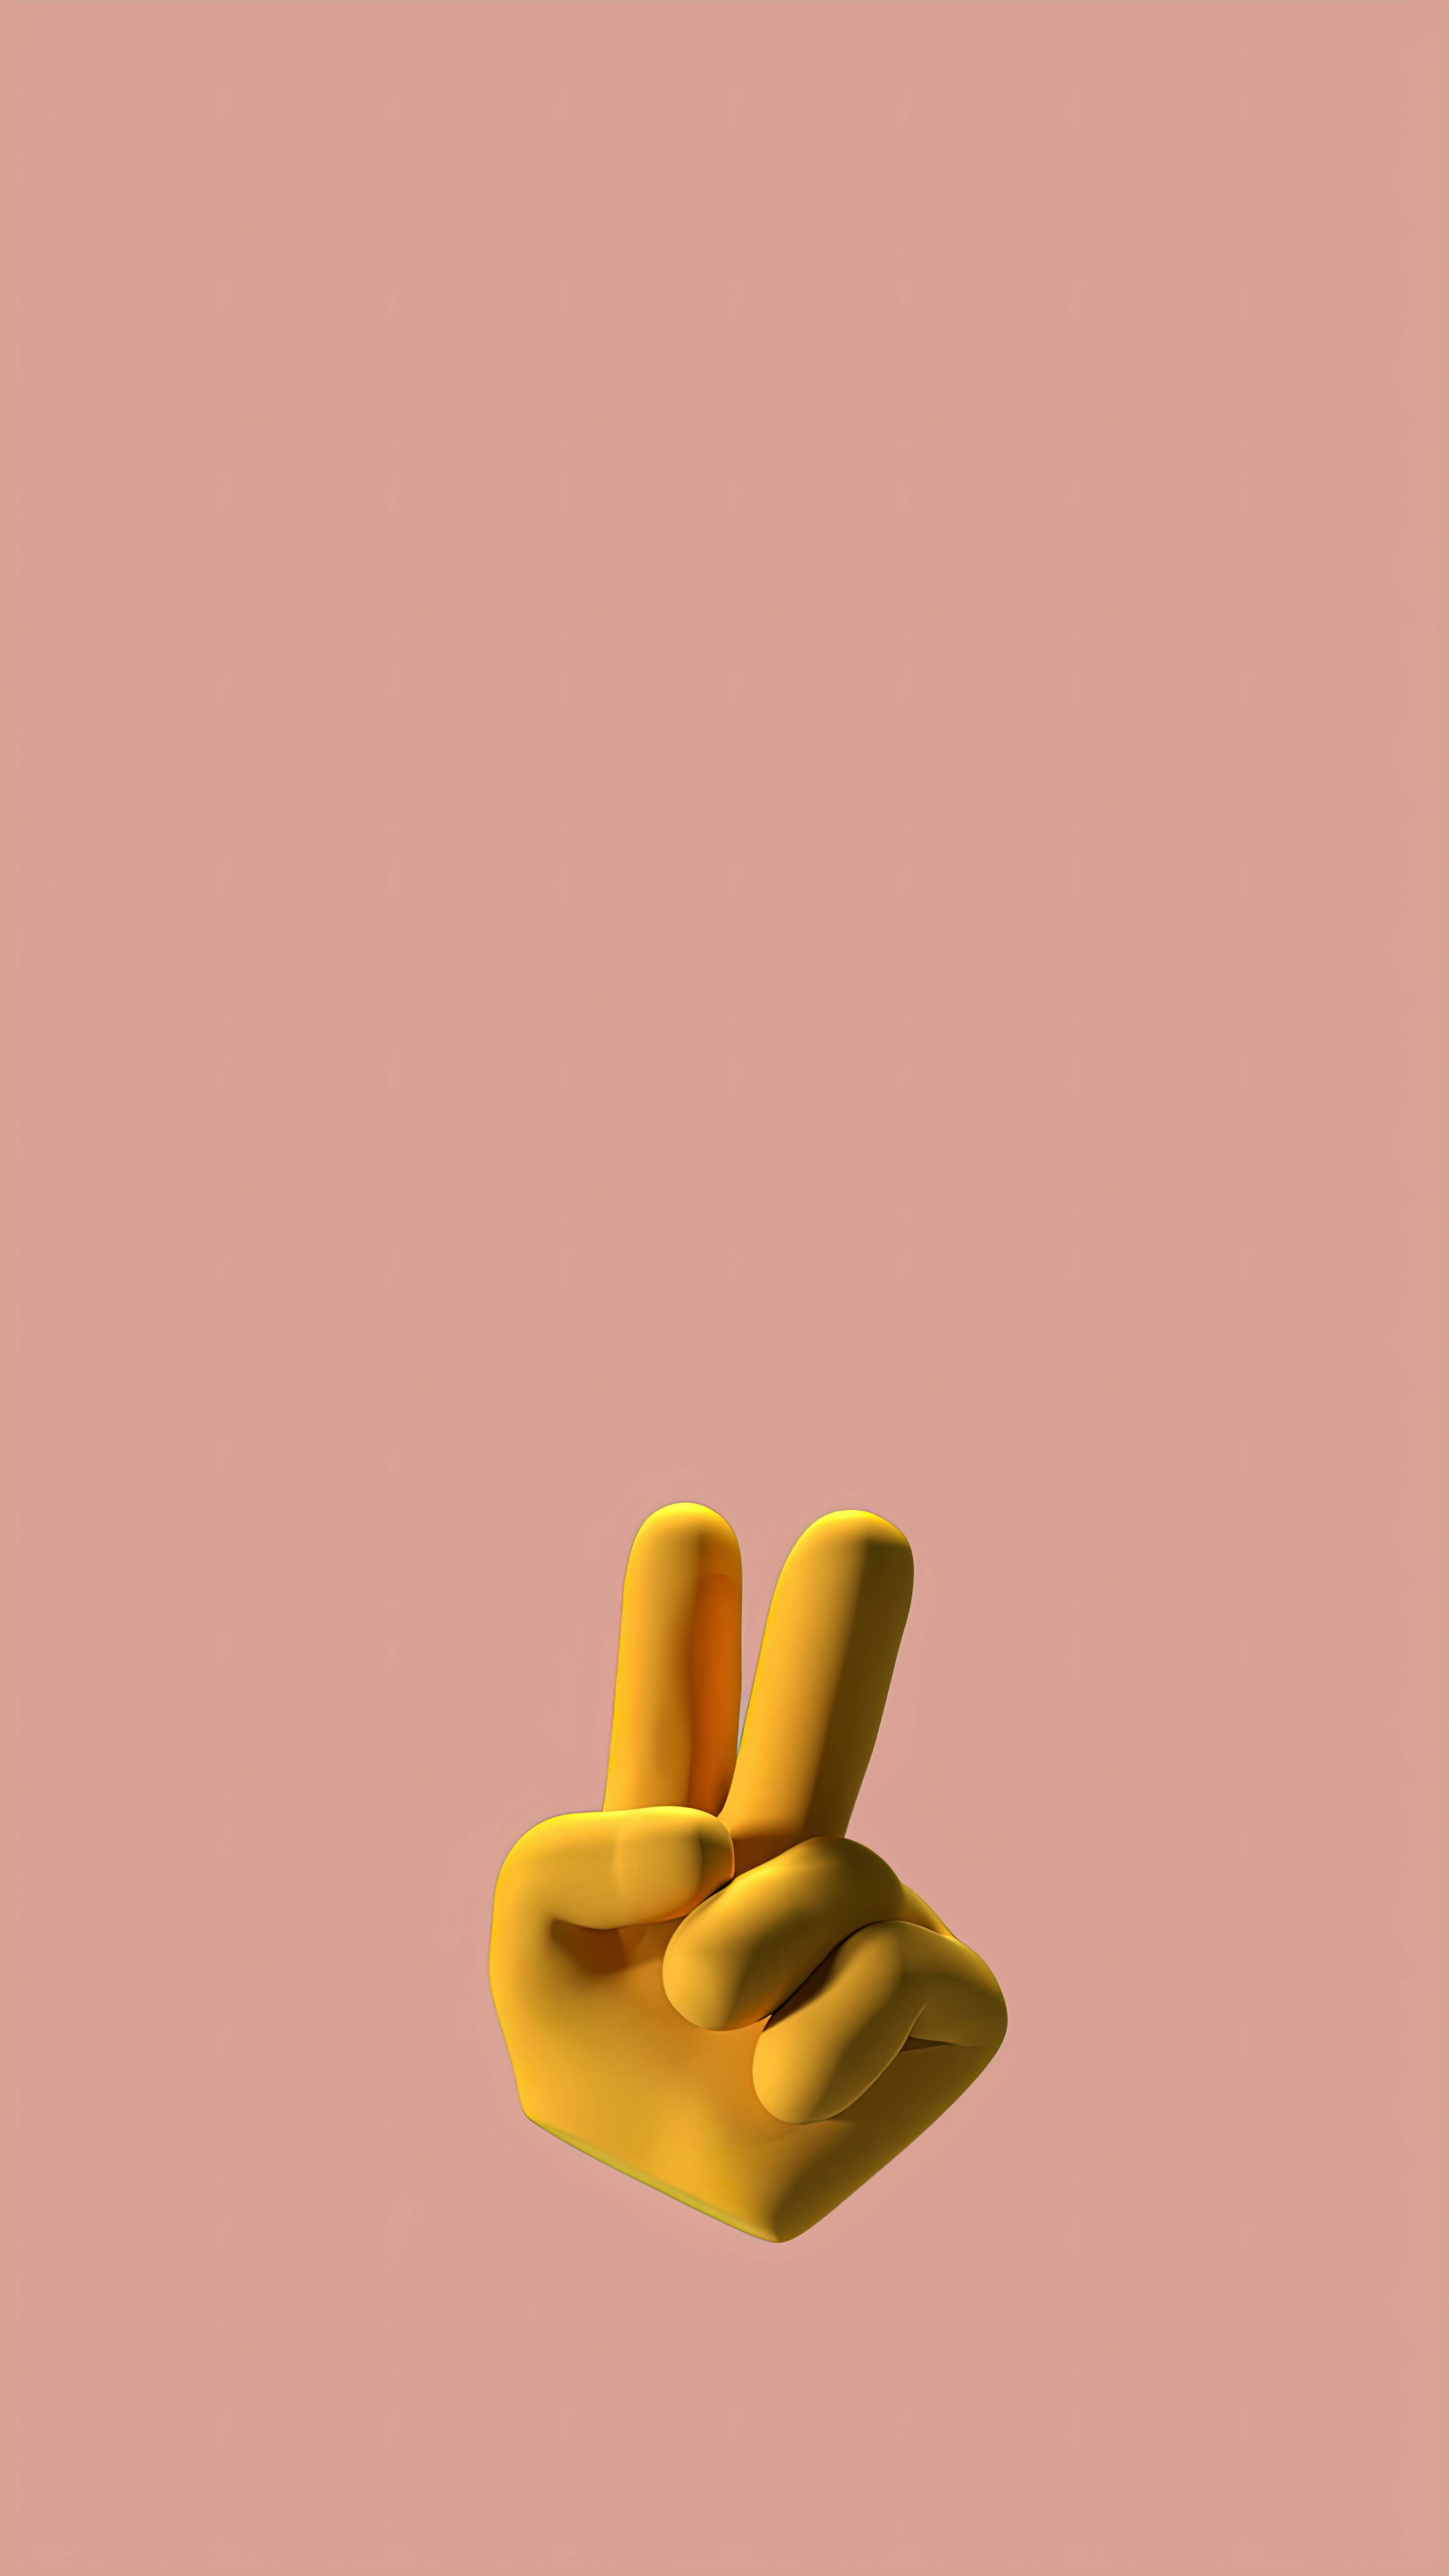 middle finger emoji wallpaper